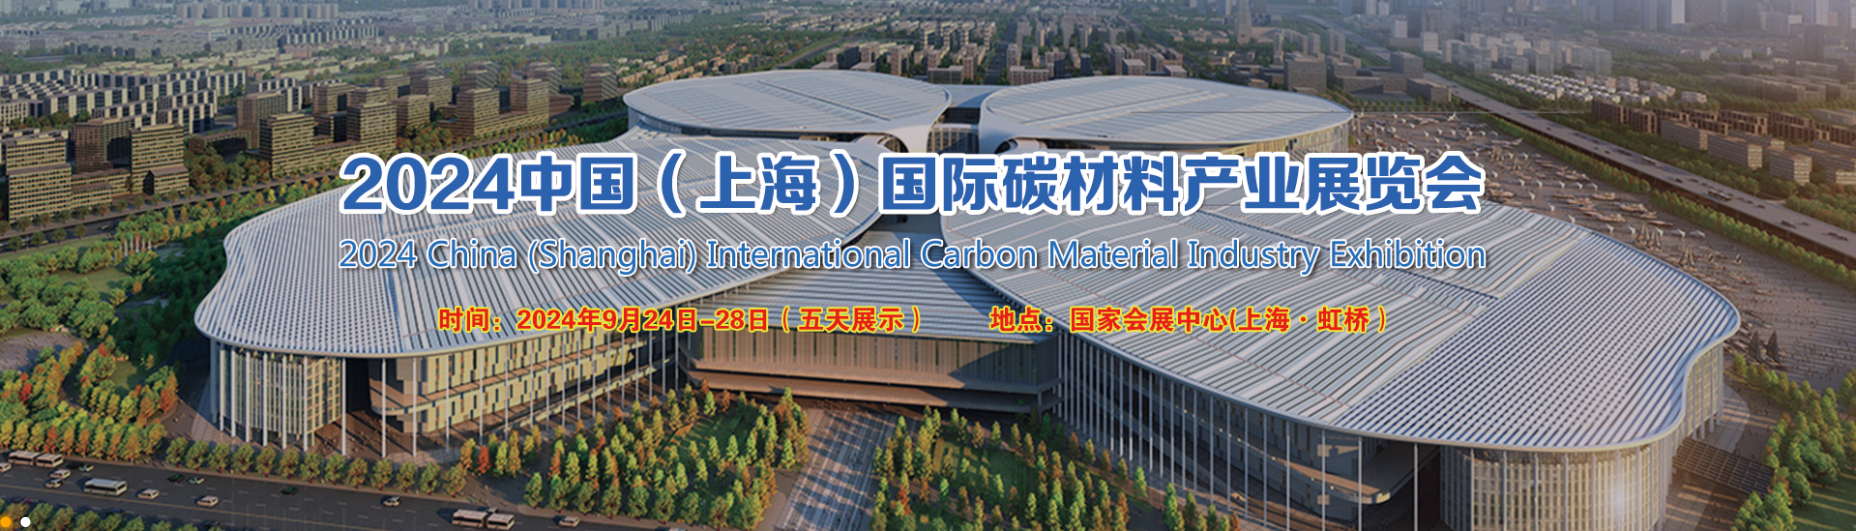 Salon international de l'industrie des matériaux carbonés en Chine (Shanghai) 2024